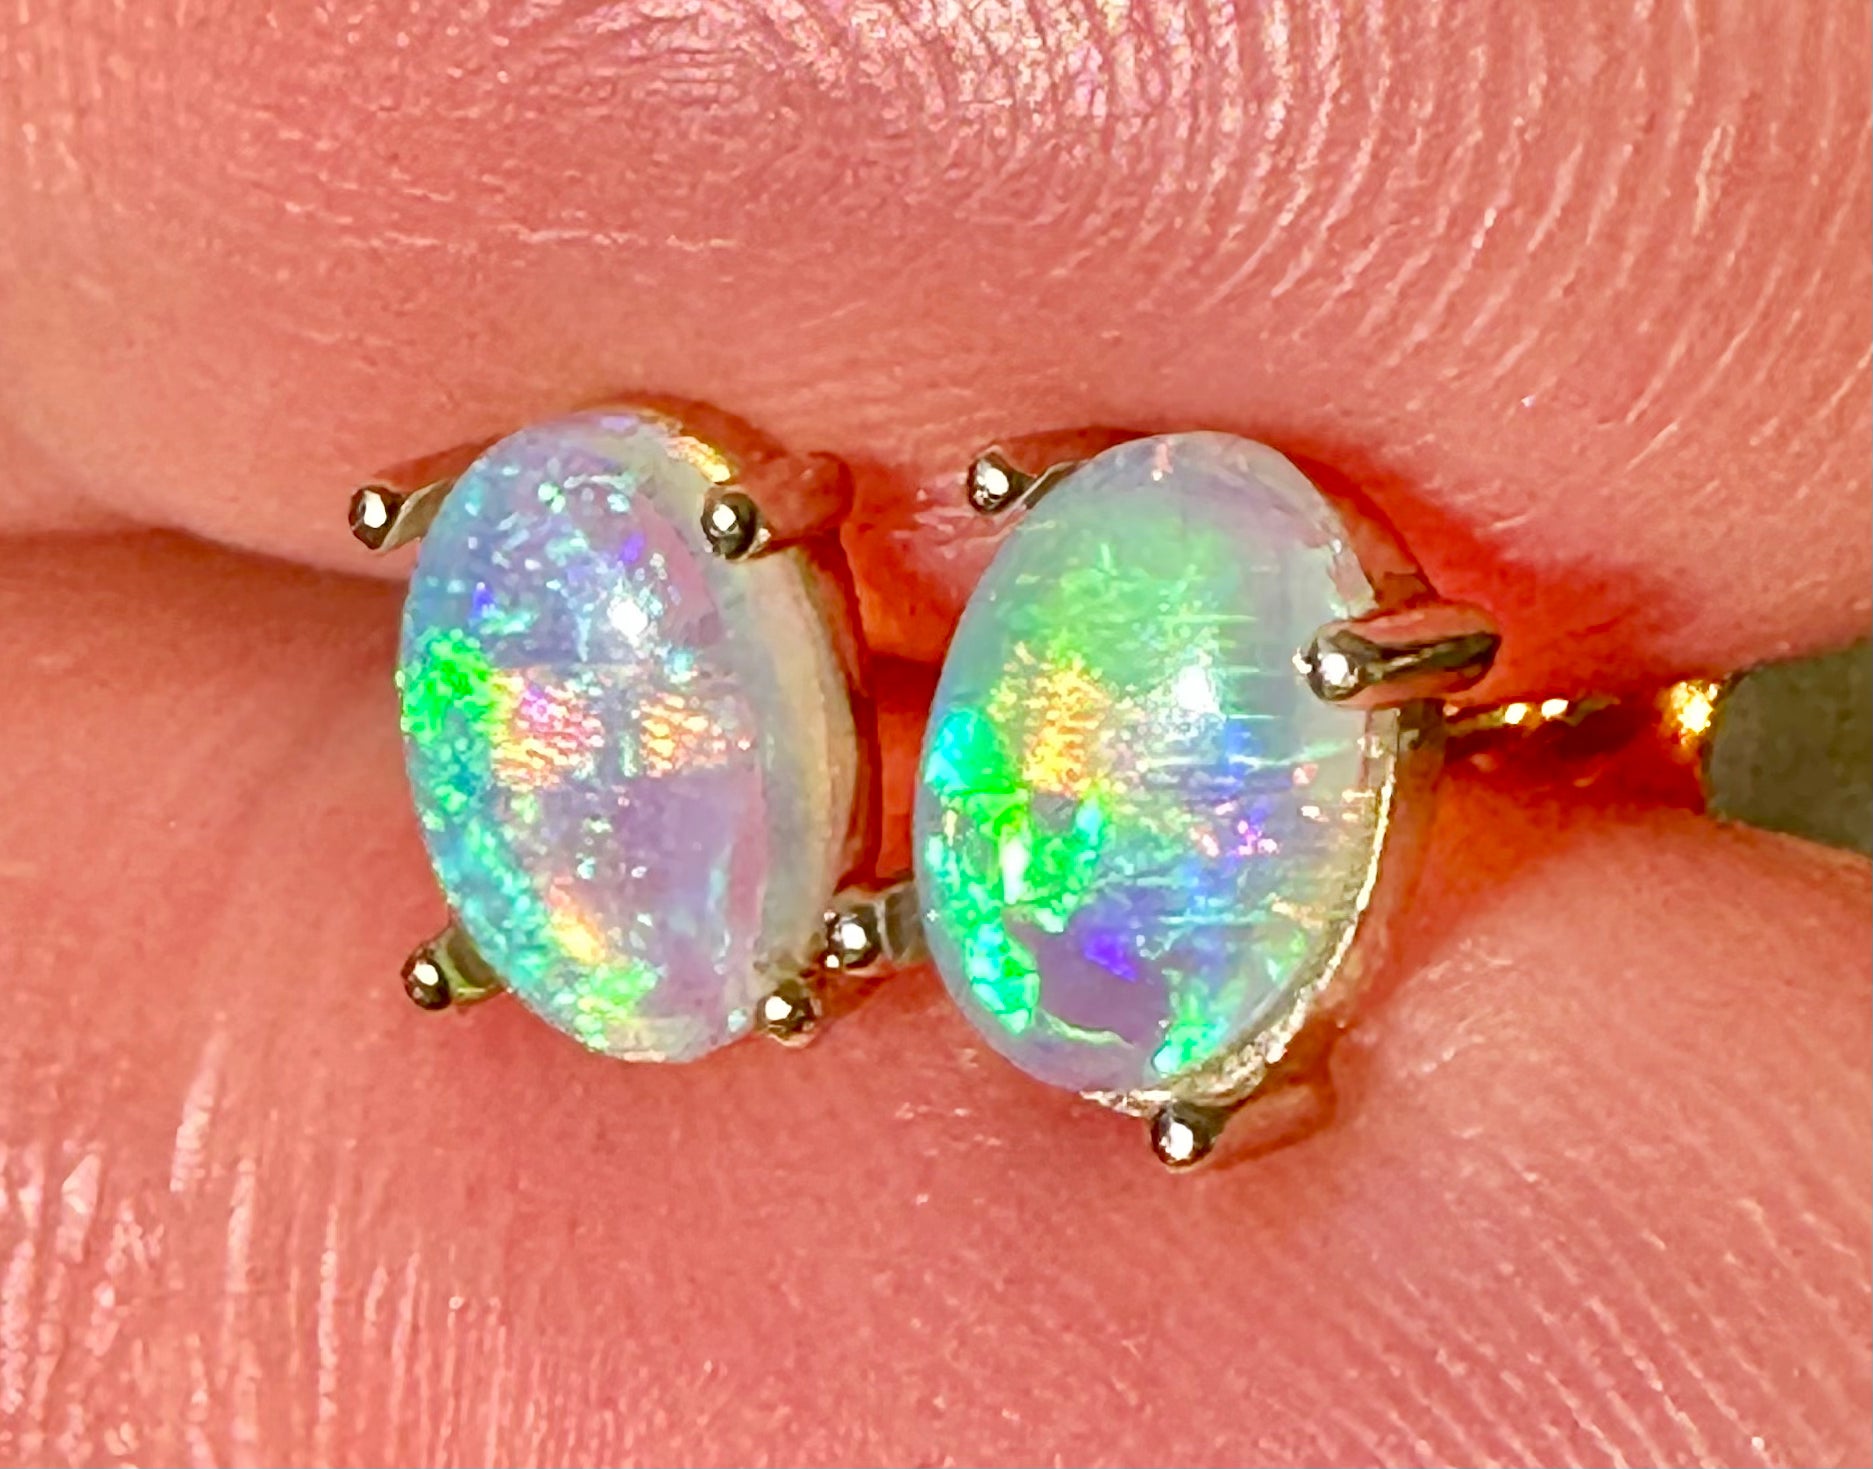 Crystal opal stud earrings set in 14k yellow gold